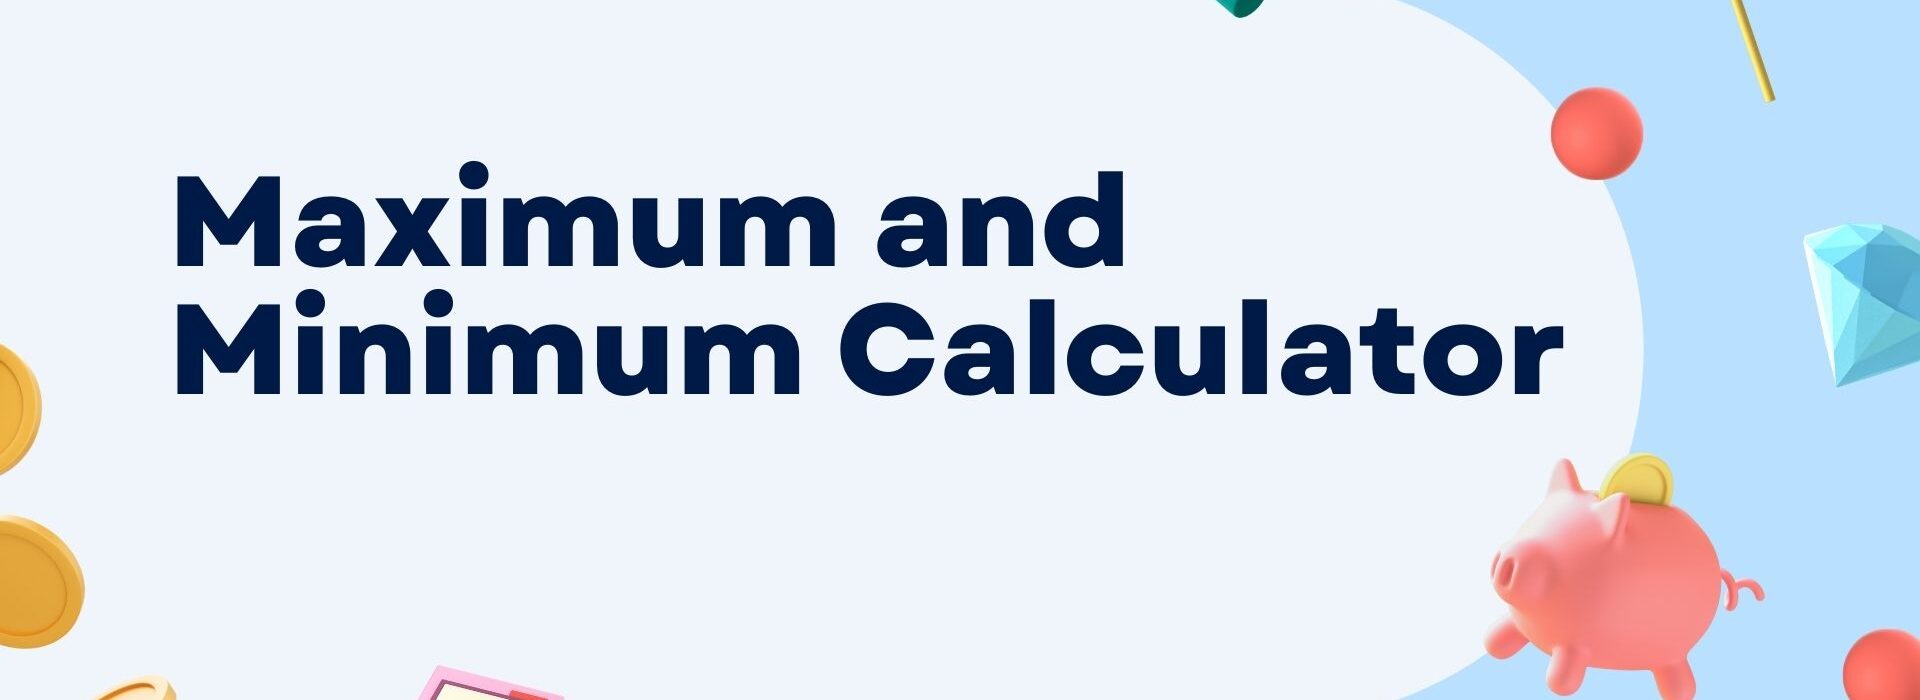 Maximum and Minimum Calculator